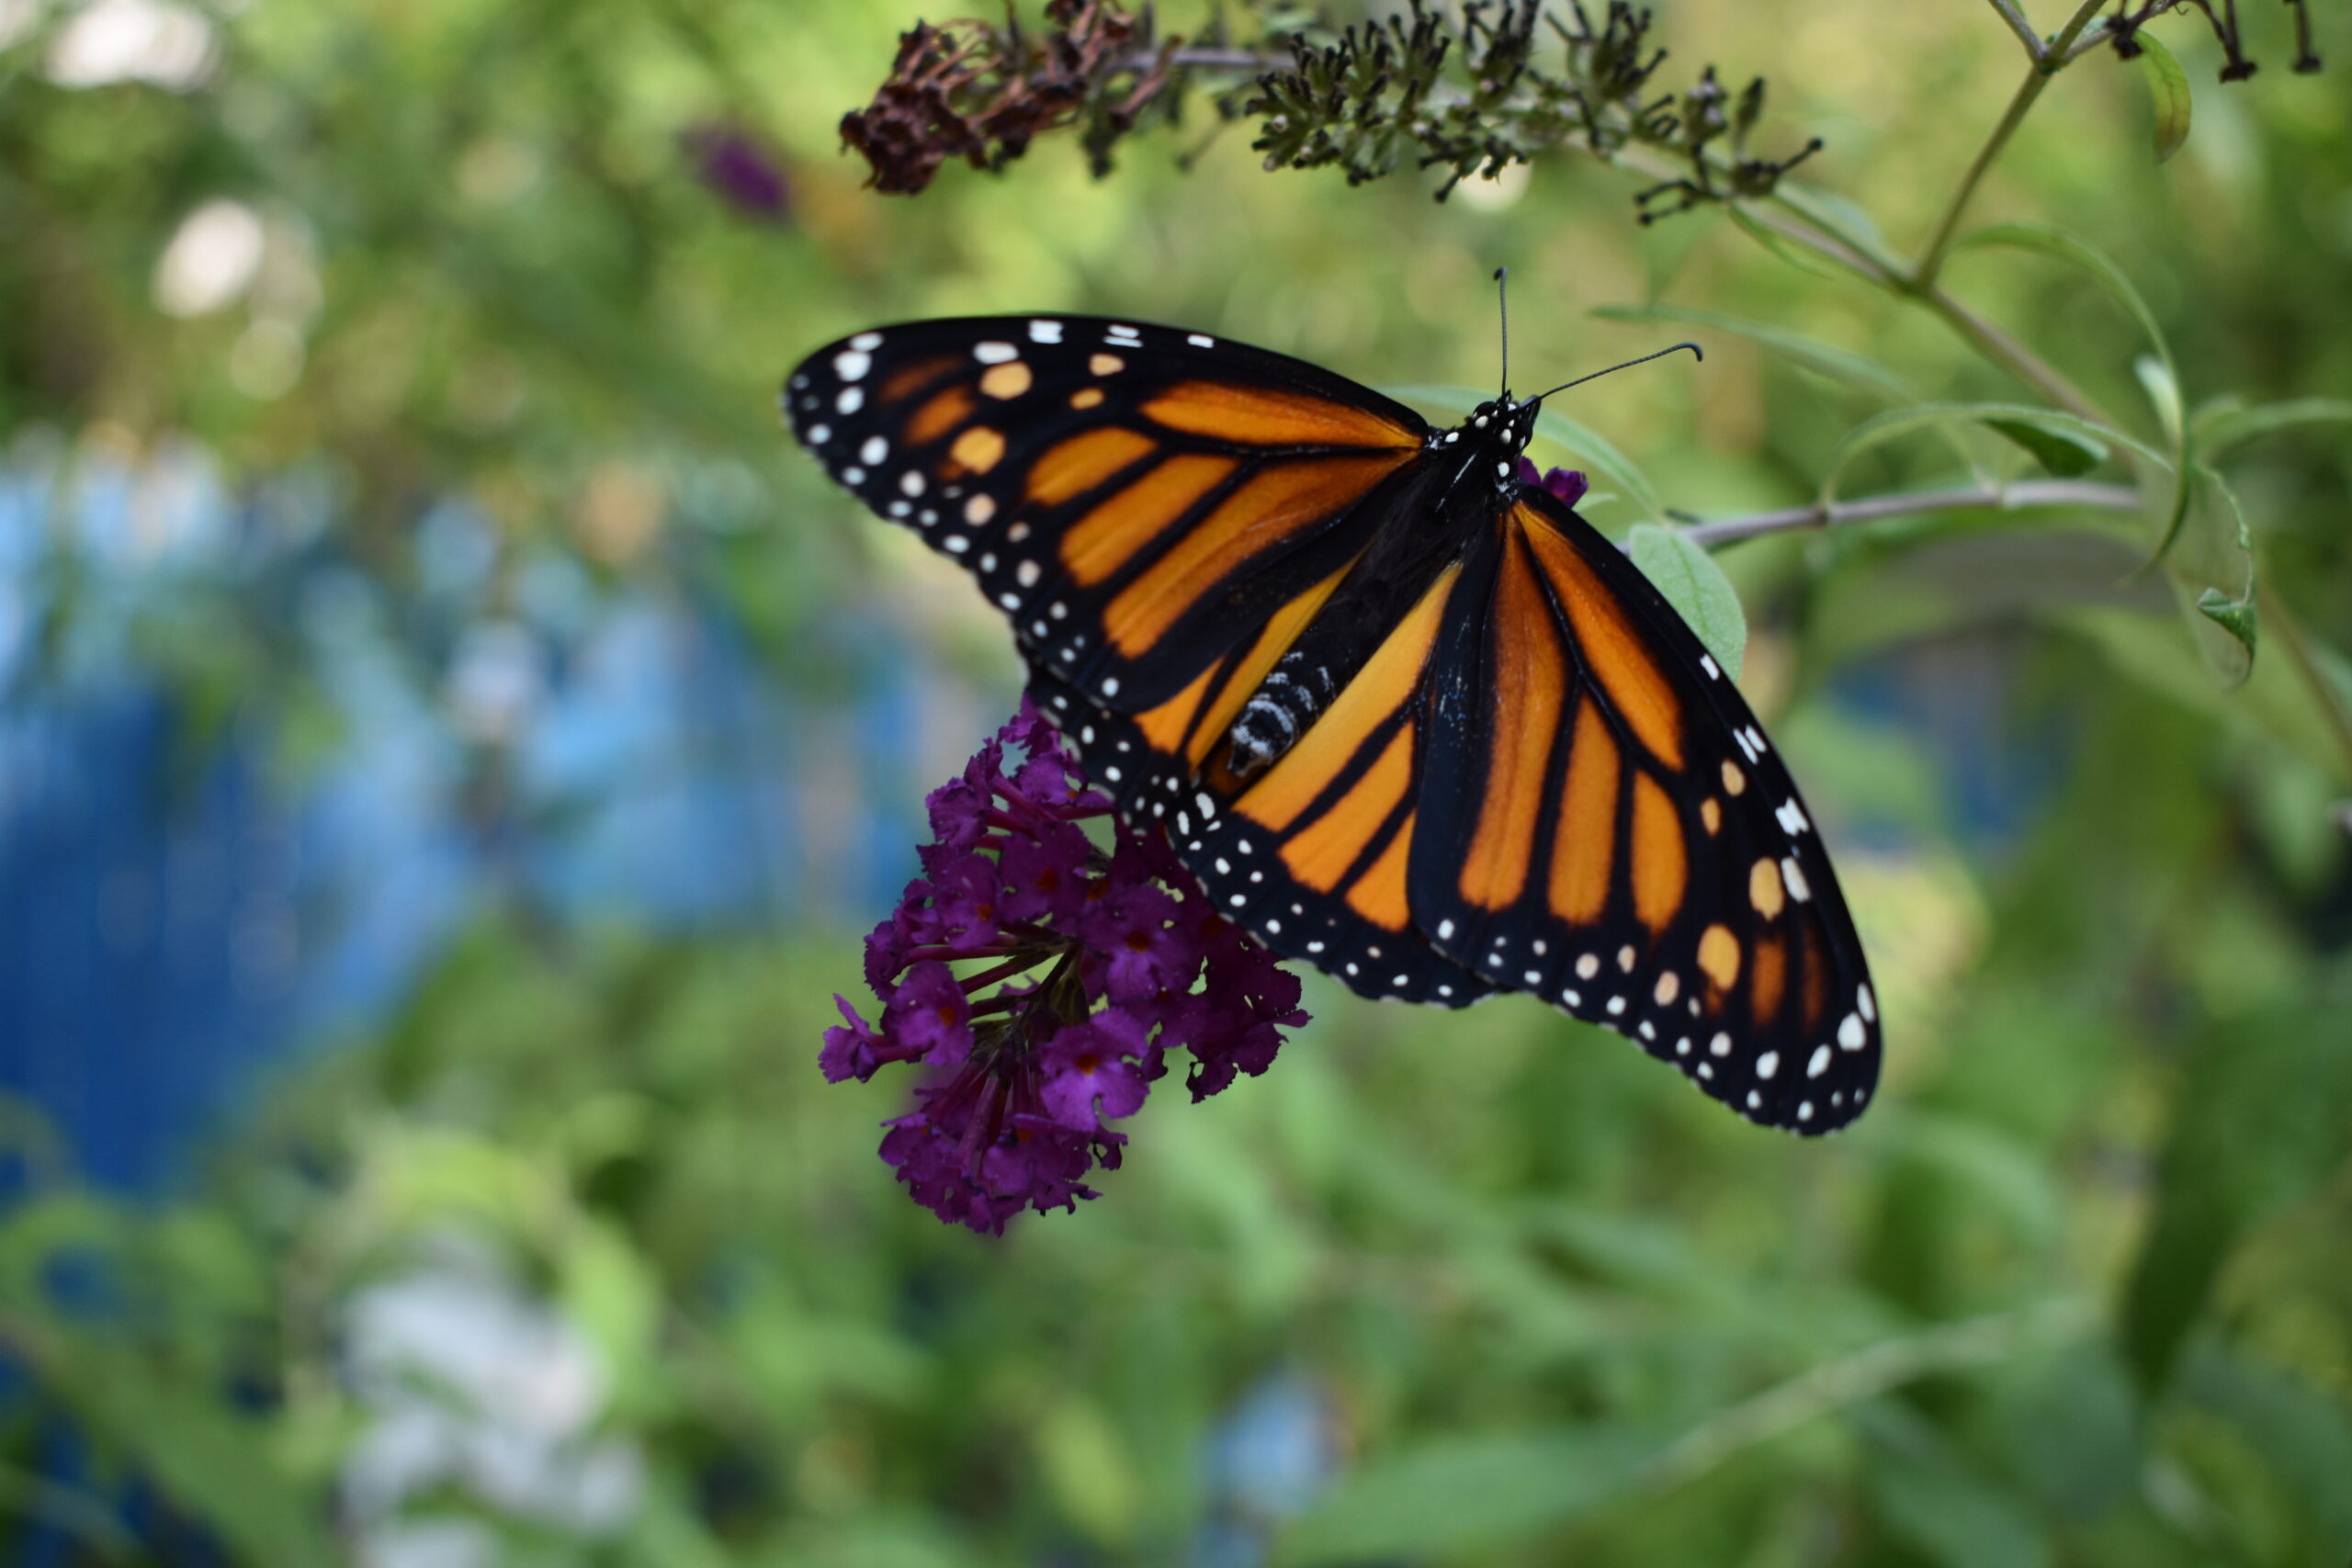 A monarch released in Mary Vienneau's garden. BRENDAN J. O'REILLY